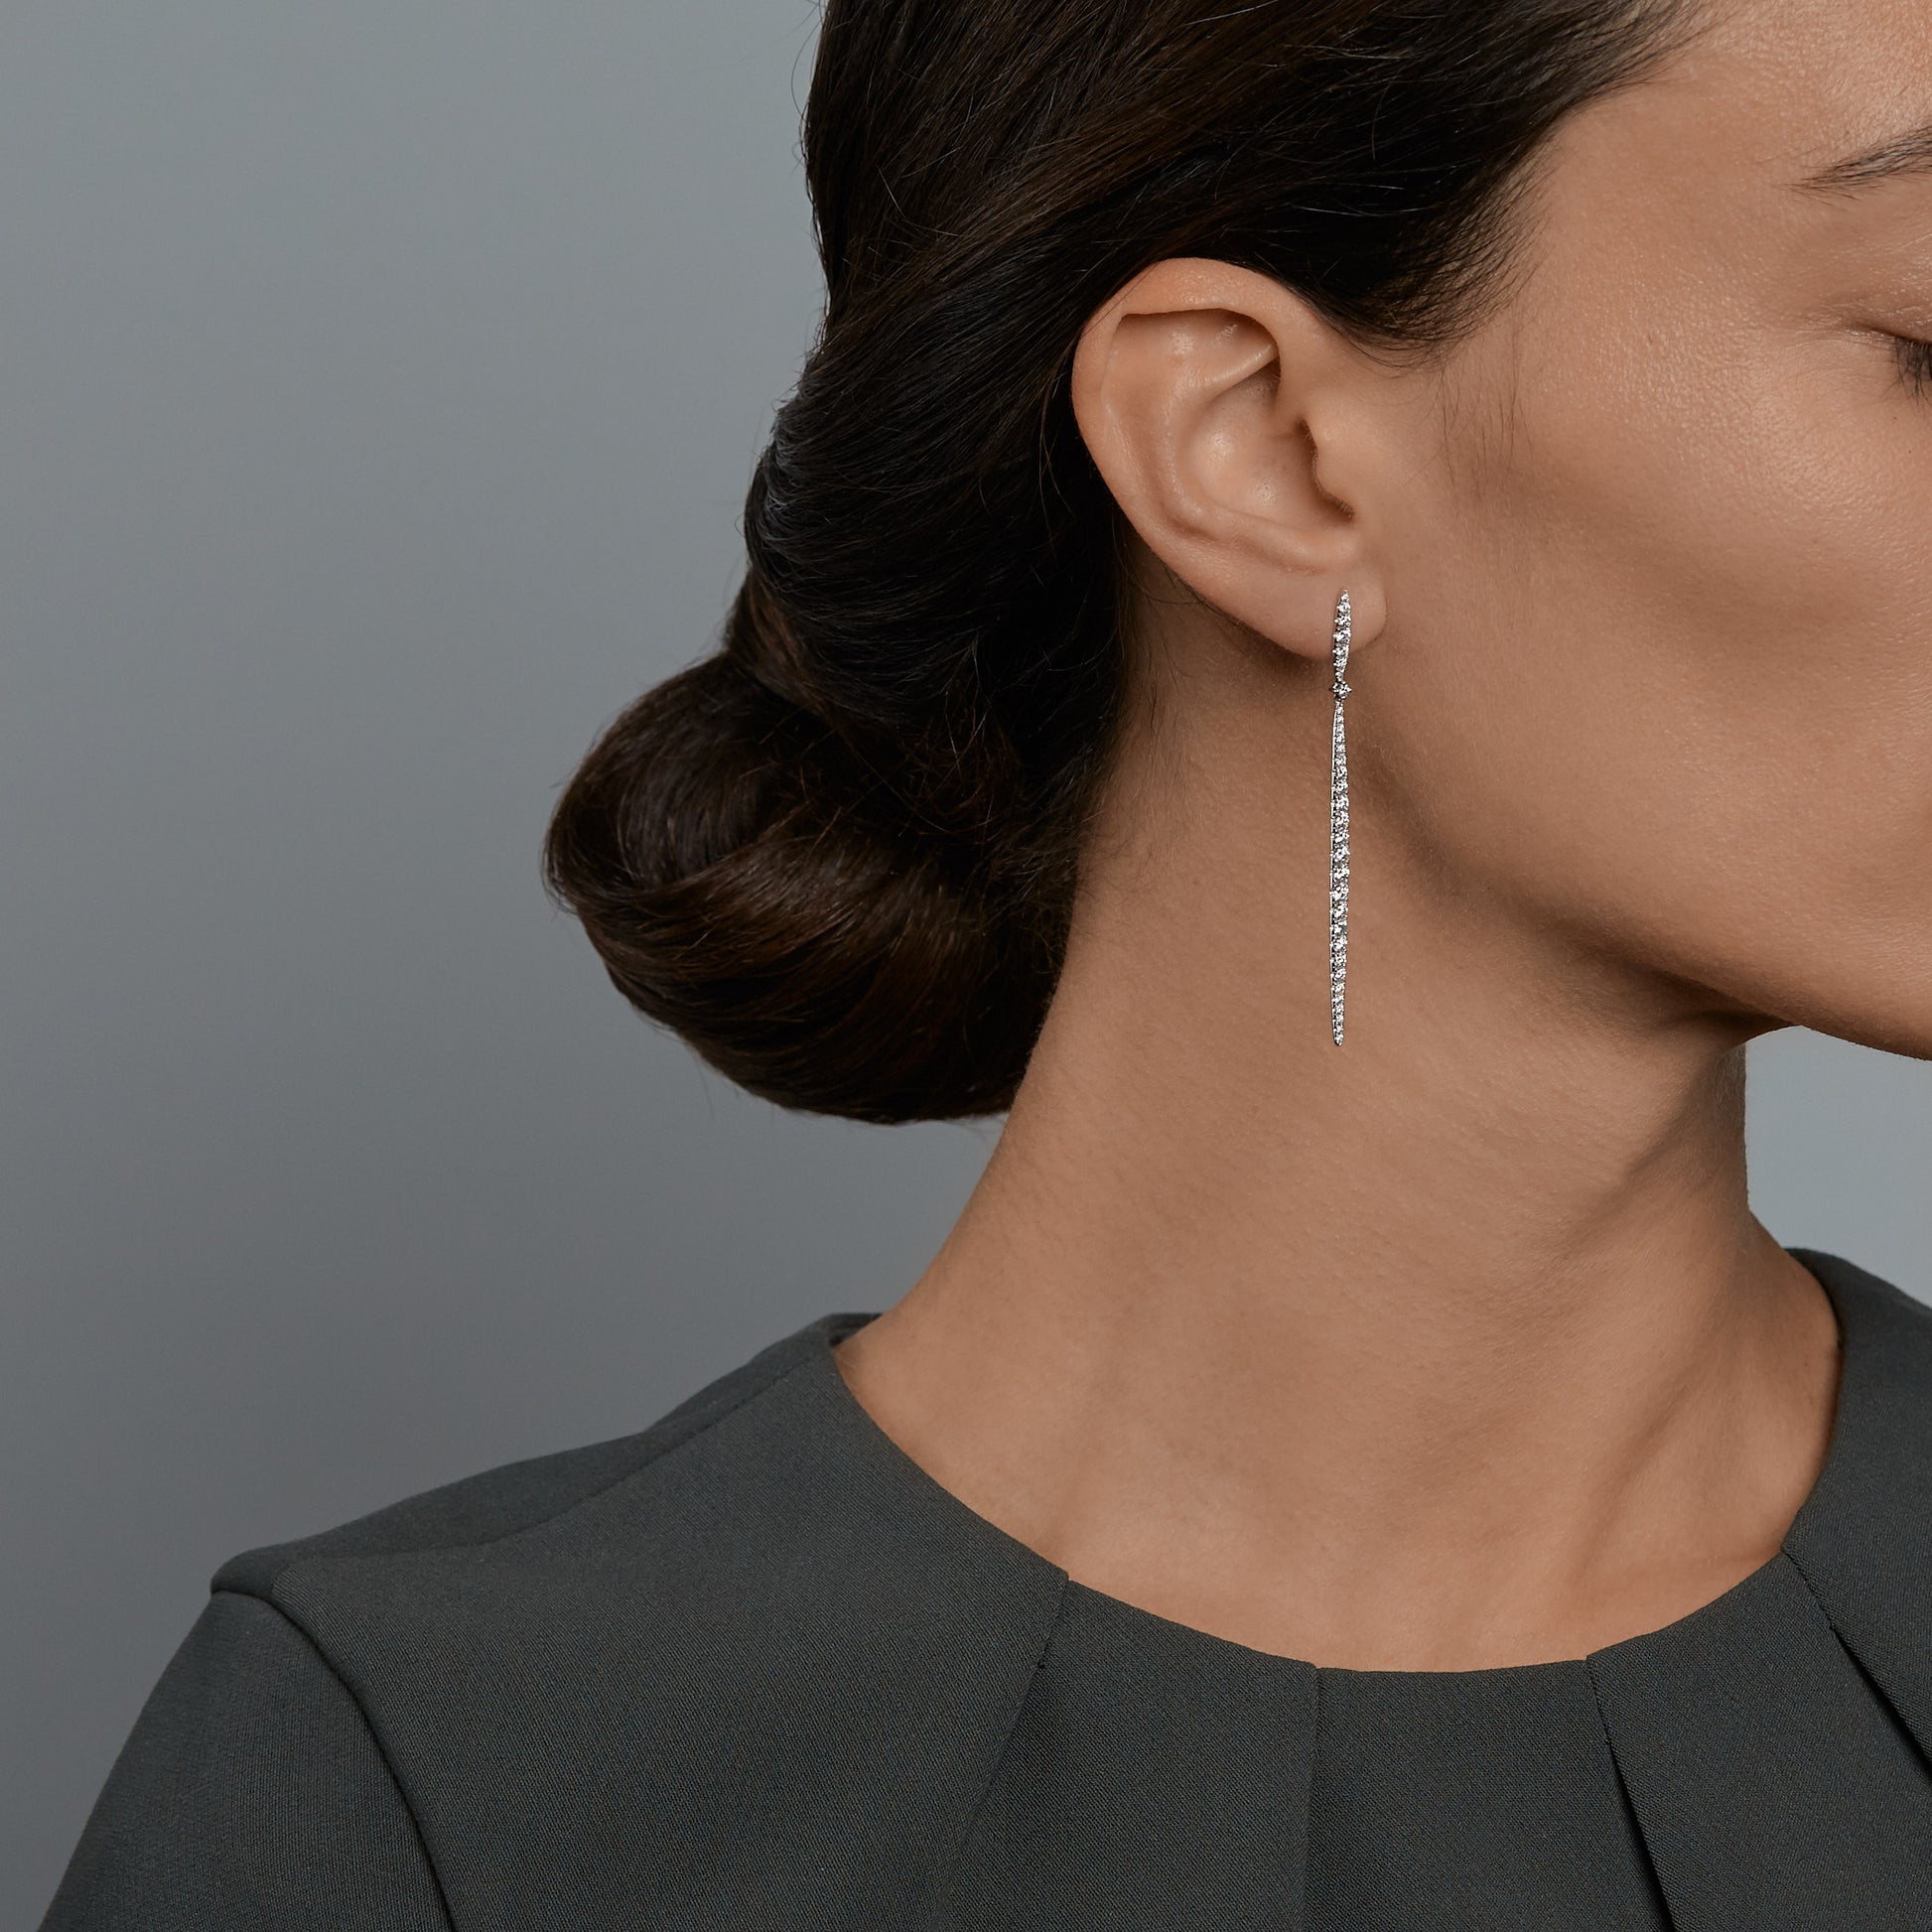 Woman wearing the Oliver Heemeyer Sword diamond earrings.